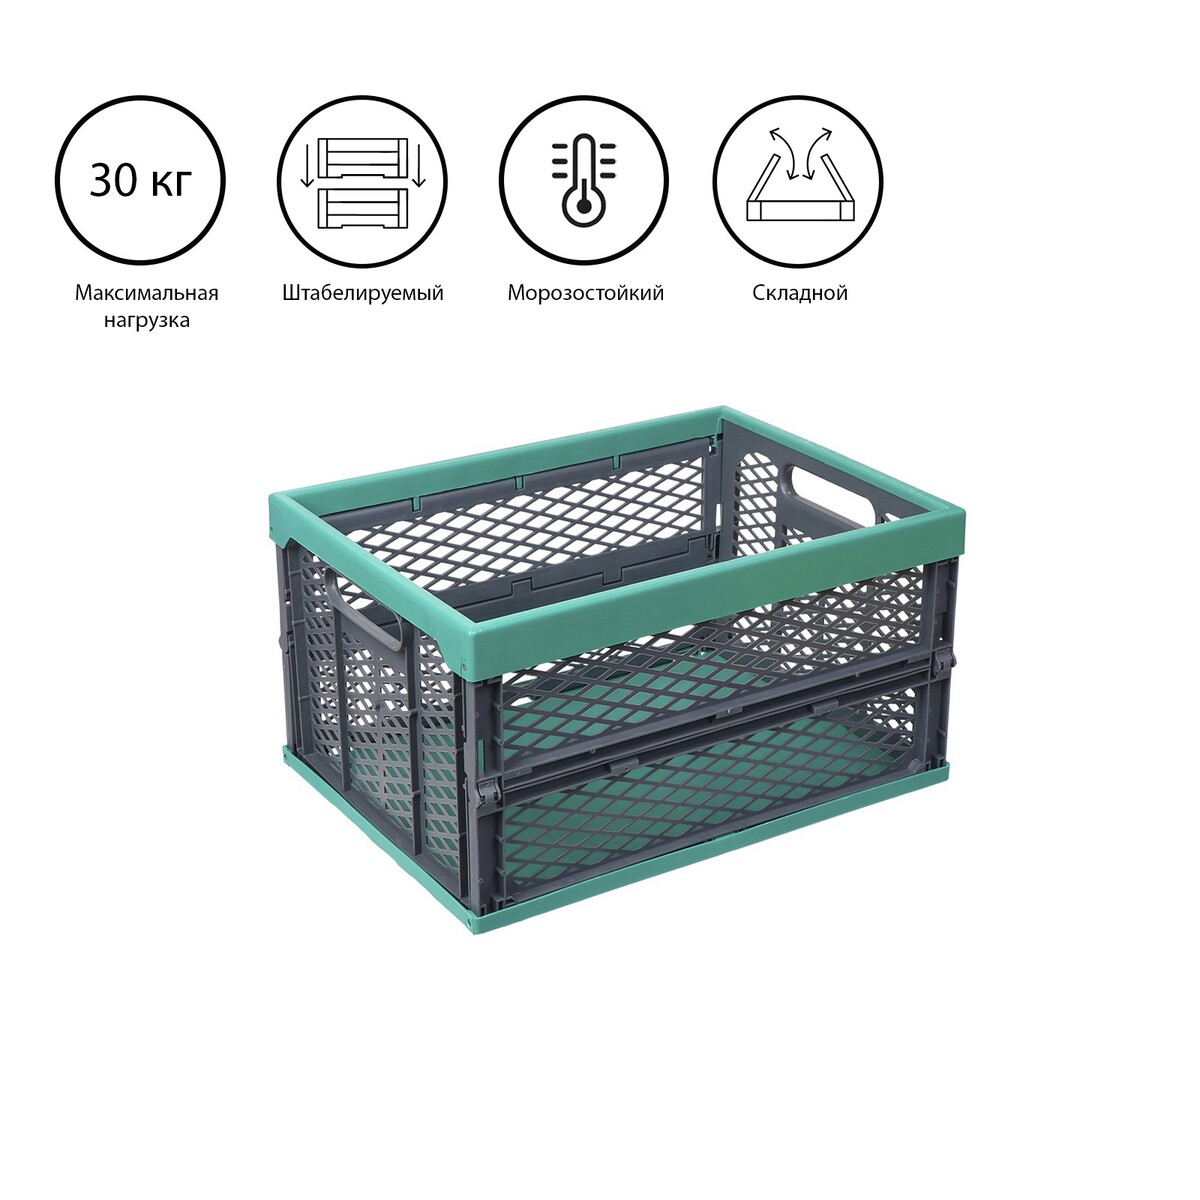 Ящик складной, пластиковый, 47,5 × 34,5 × 23 см, на 30 кг, зелено-серый трикап табурет складной пластиковый большой kg